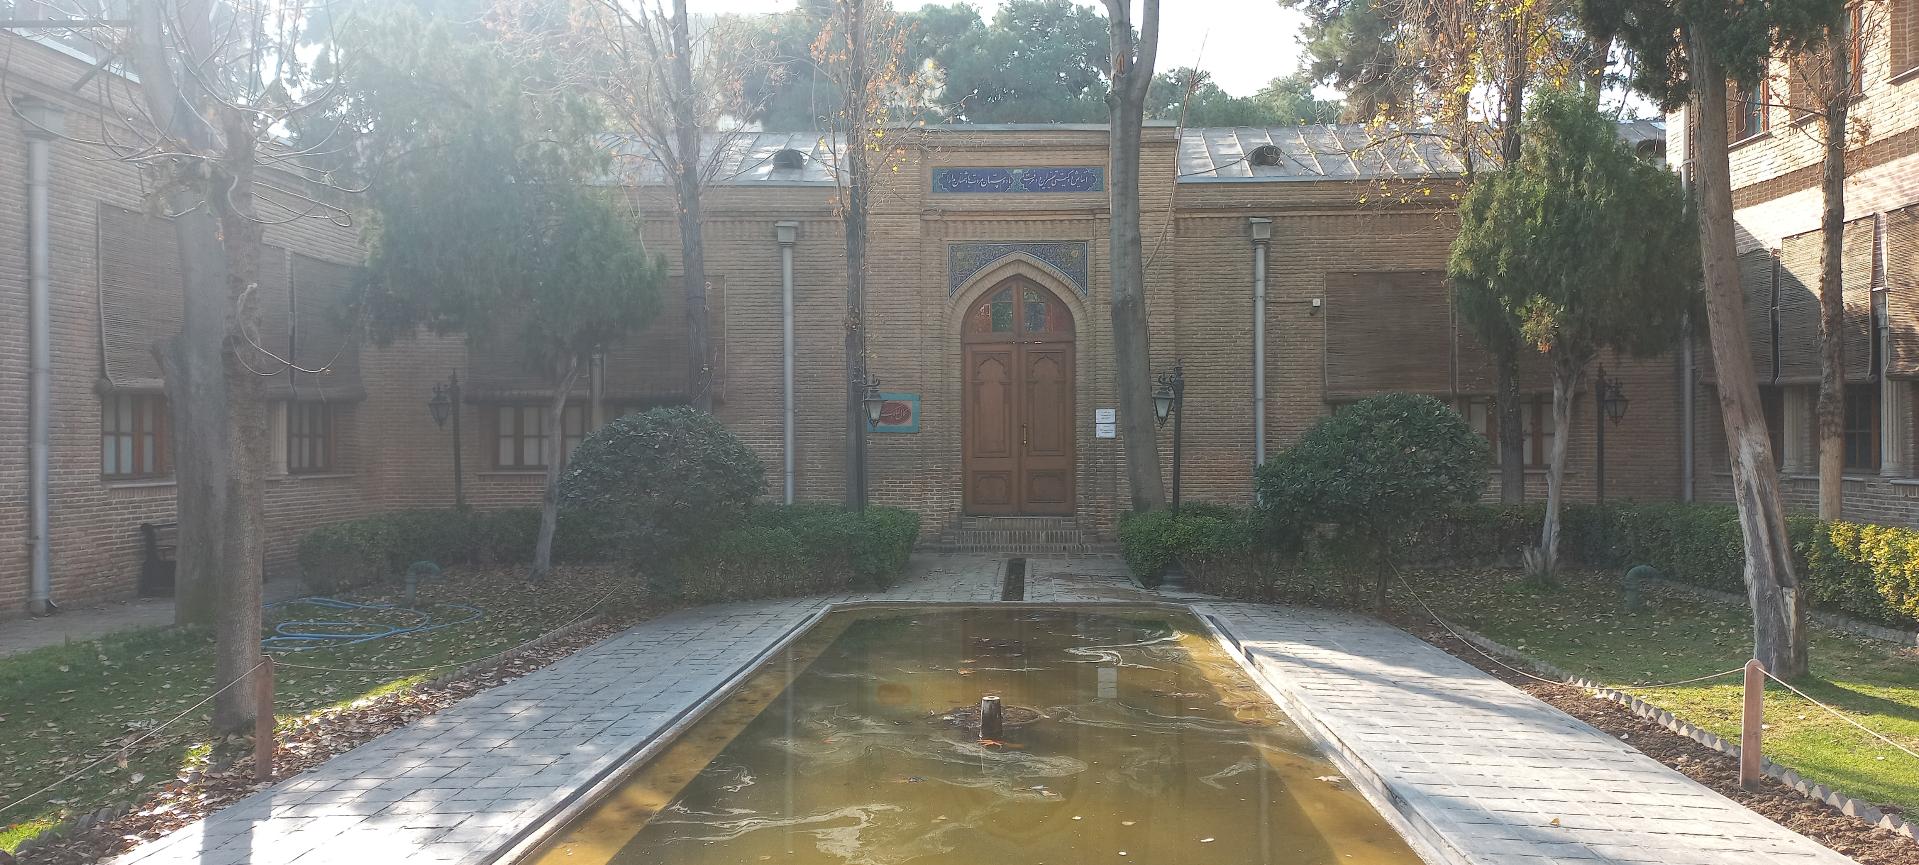 عکس باغ موزه نگارستان